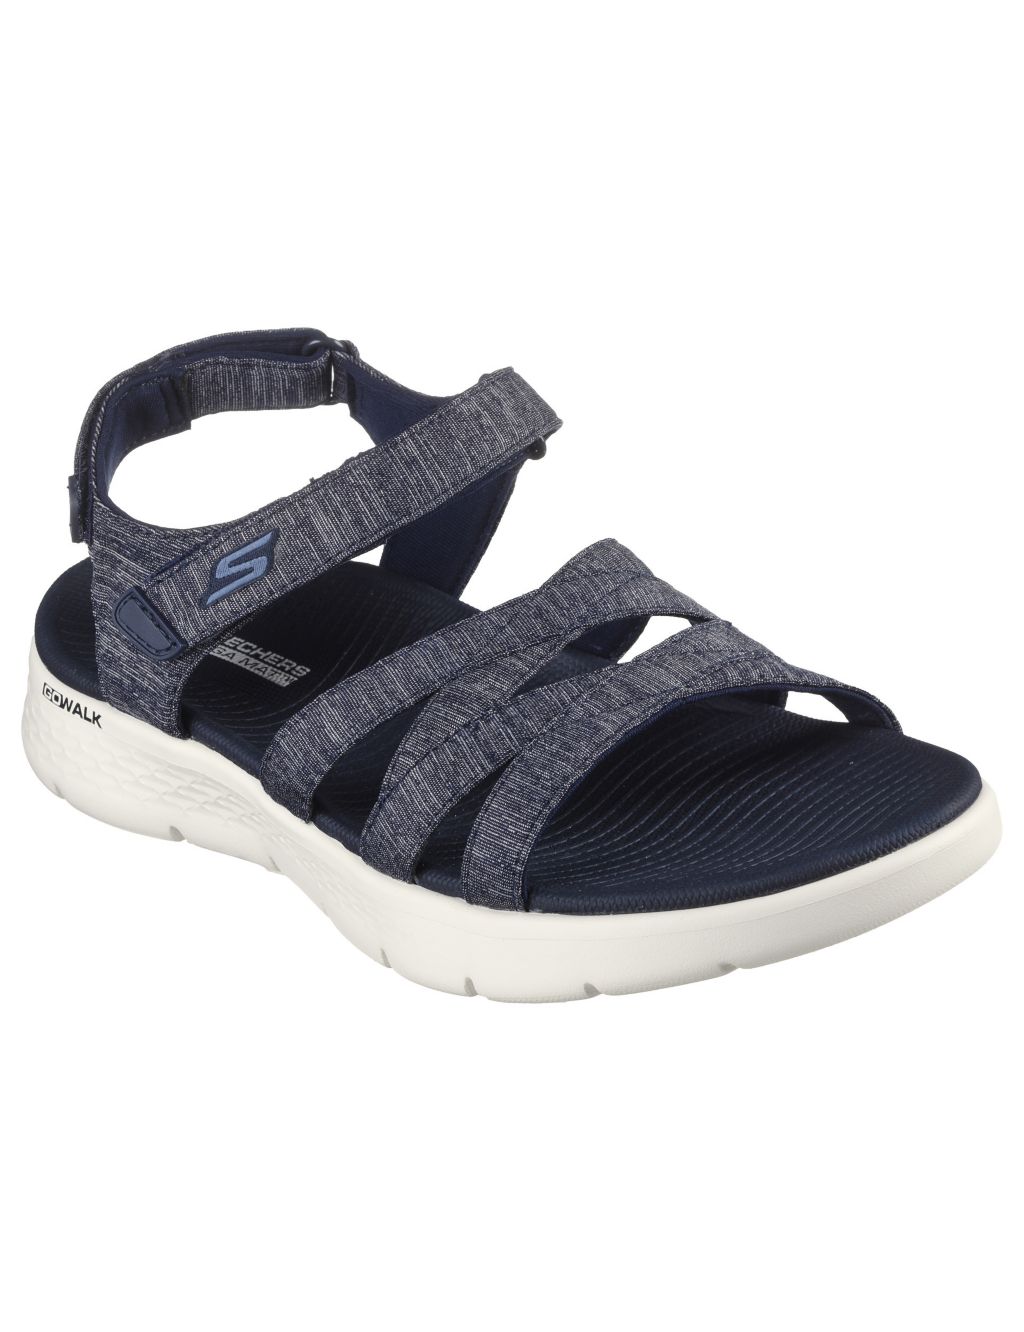 GOwalk Flex Sunshine Sandals image 2